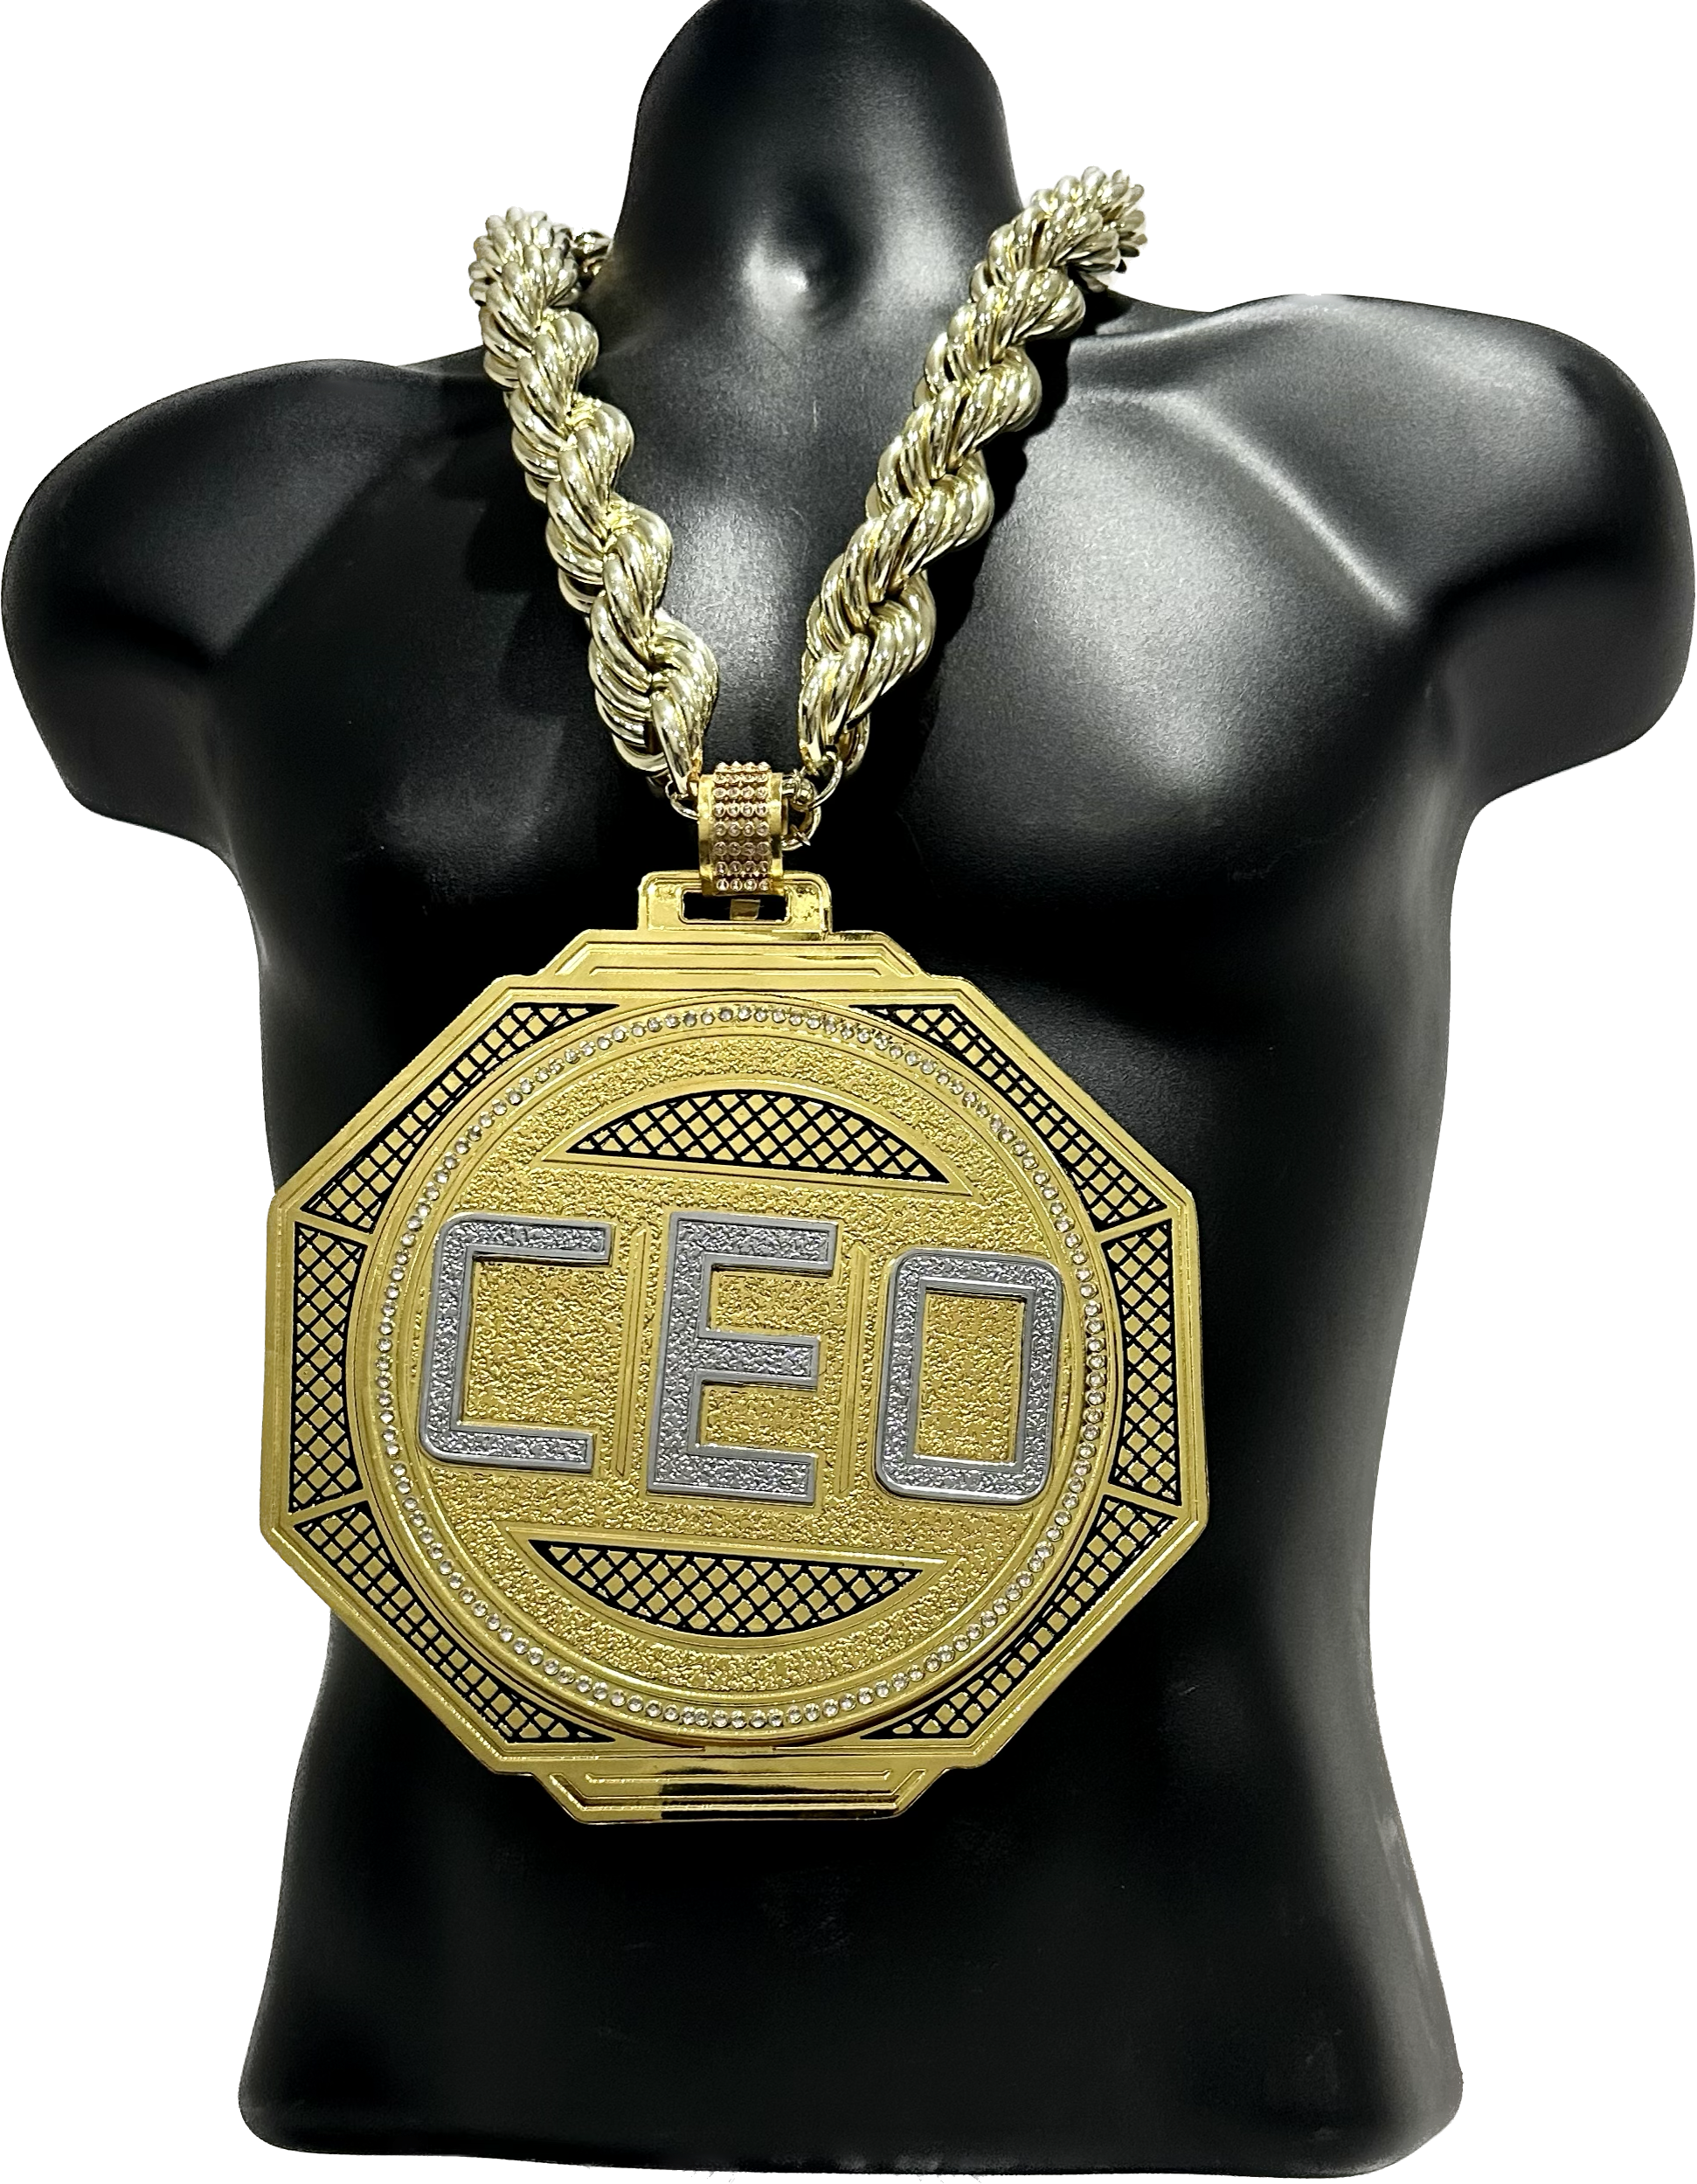 CEO Video Gaming Award Championship Chain Award